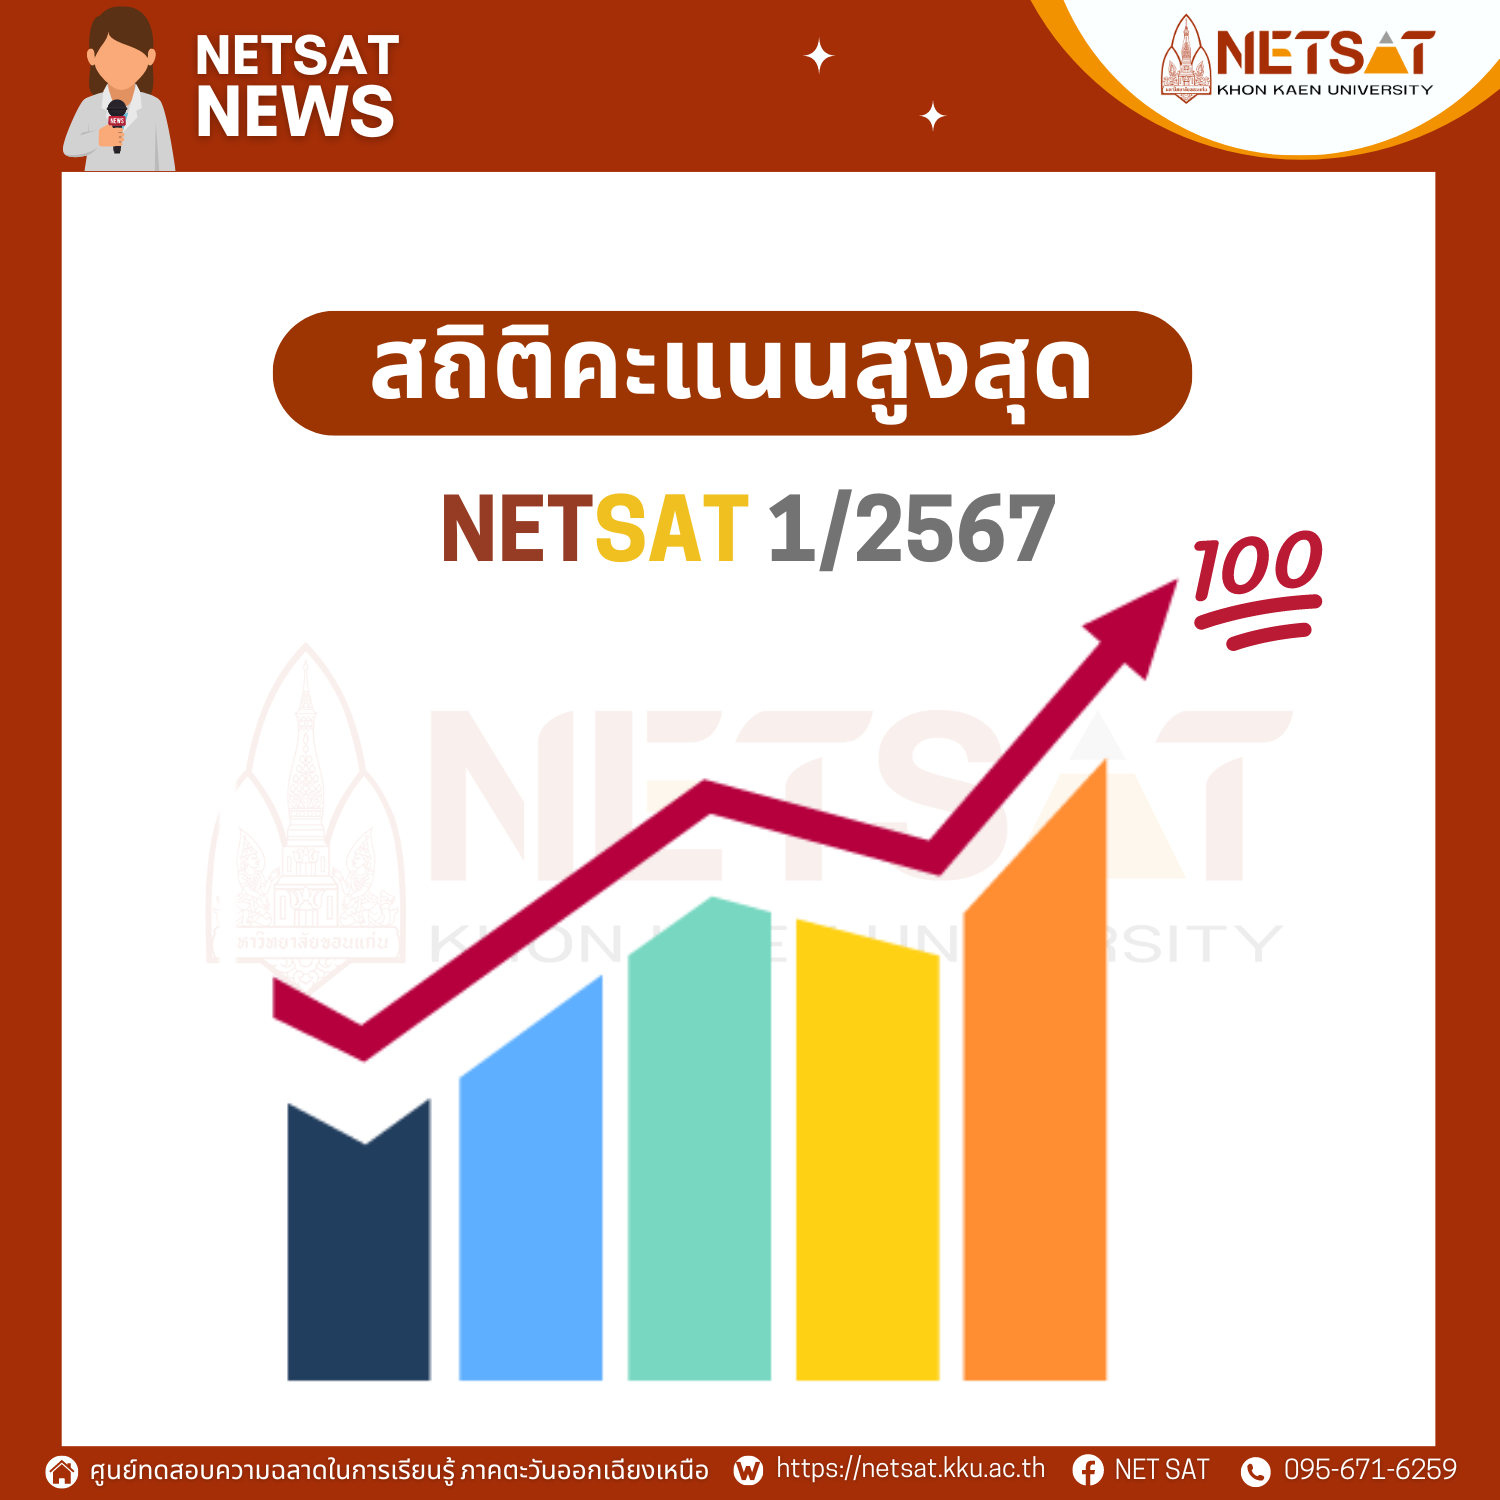 สถิติคะแนนสูงสุด NETSAT ครั้งที่ 1/2567